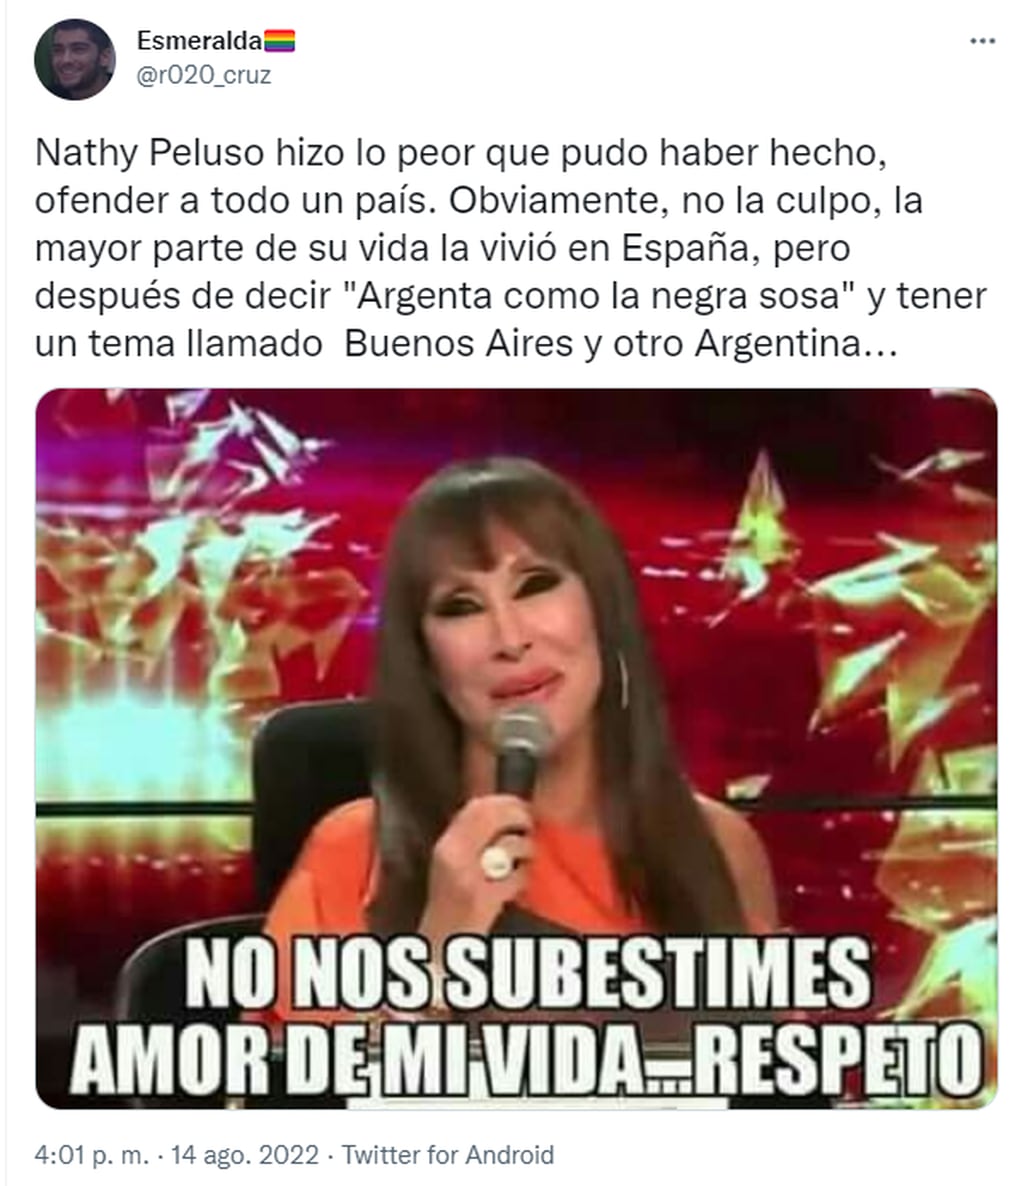 Nathy Peluso confesó que se “siente española” y causó polémica en las redes sociales.